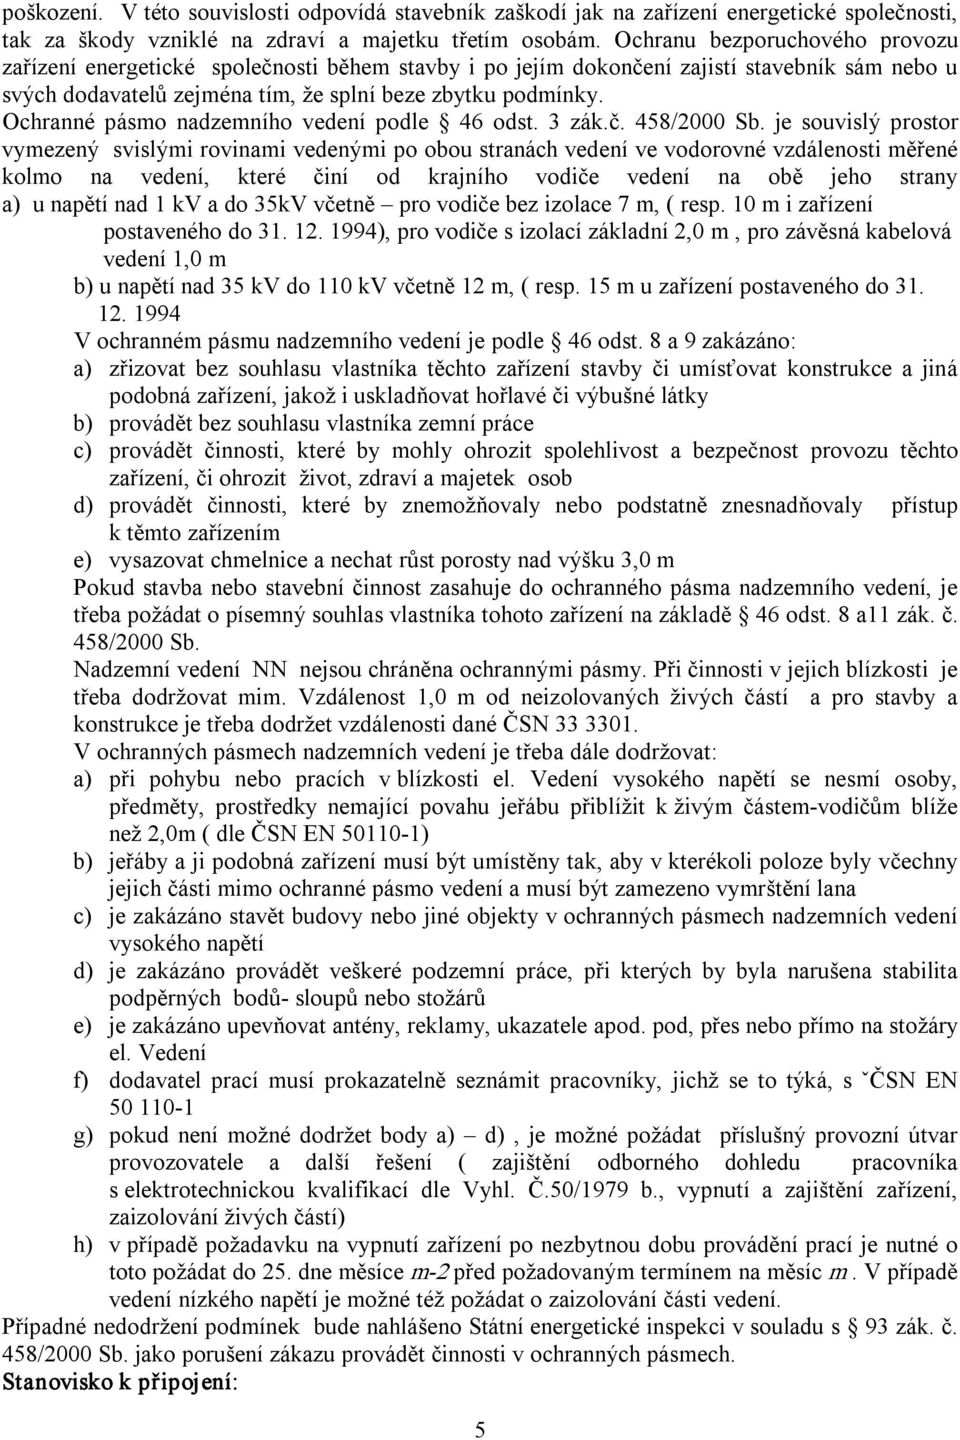 Ochranné pásmo nadzemního vedení podle 46 odst. 3 zák.č. 458/2000 Sb.